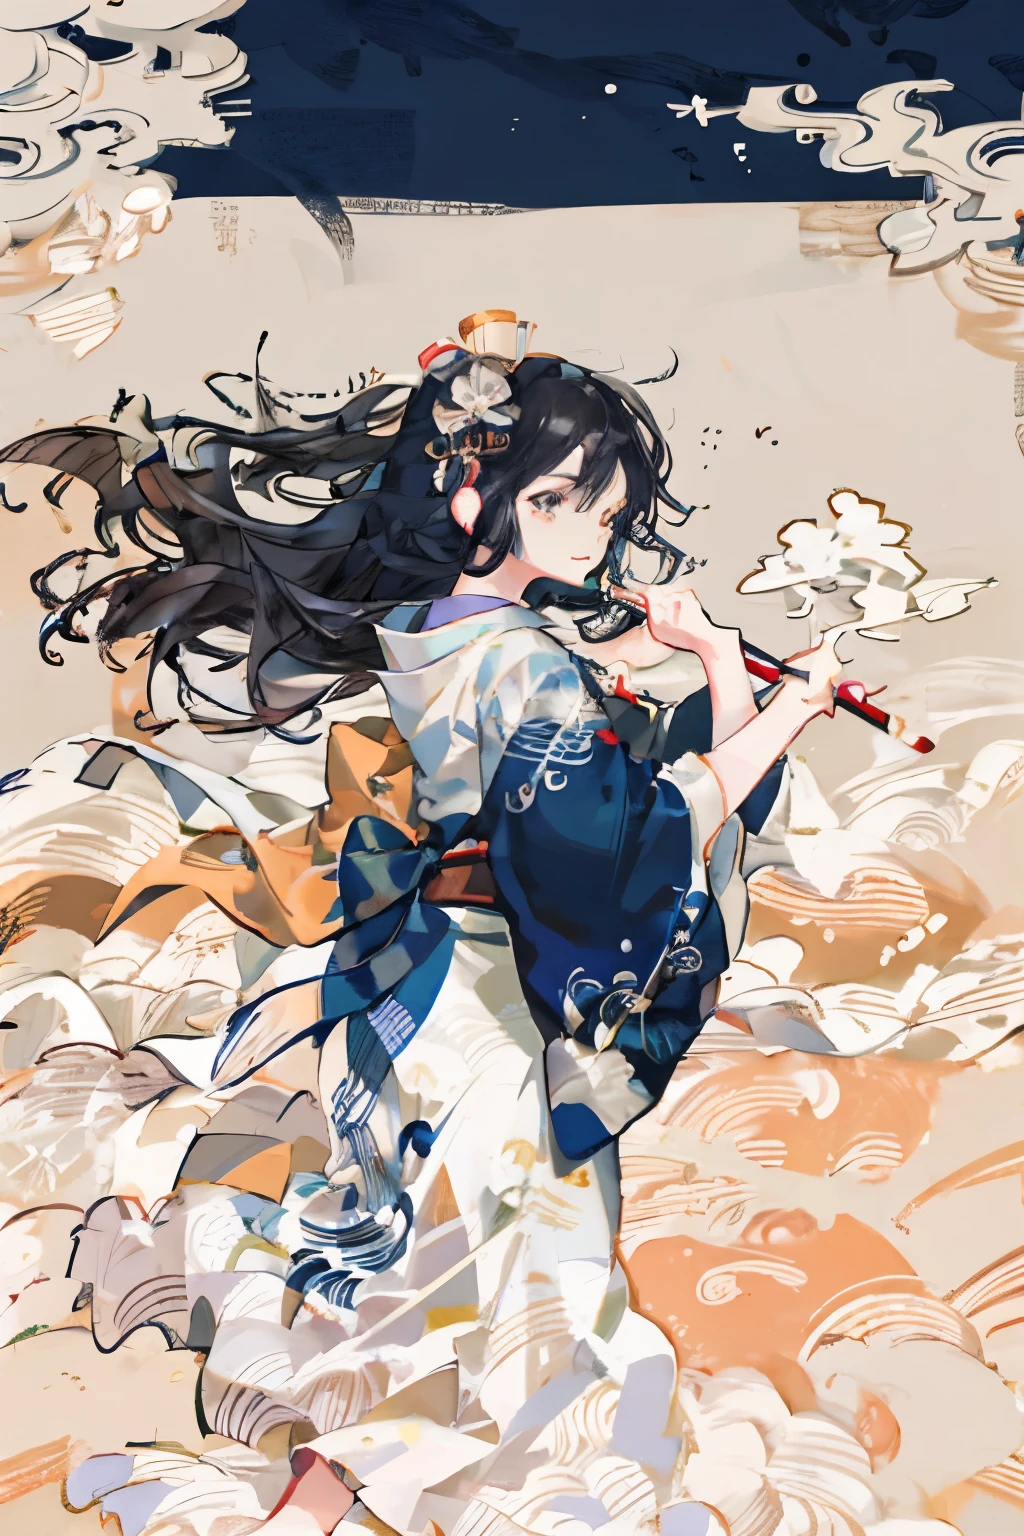 Spectacle de calligraphie japonaise, costume de kendo, tasuki, énorme pinceau, encre, éclaboussures, des vagues audacieuses comme si on dansait avec un gros pinceau, Hokusai Katsushika, Délicat et précis, Style animé, fille